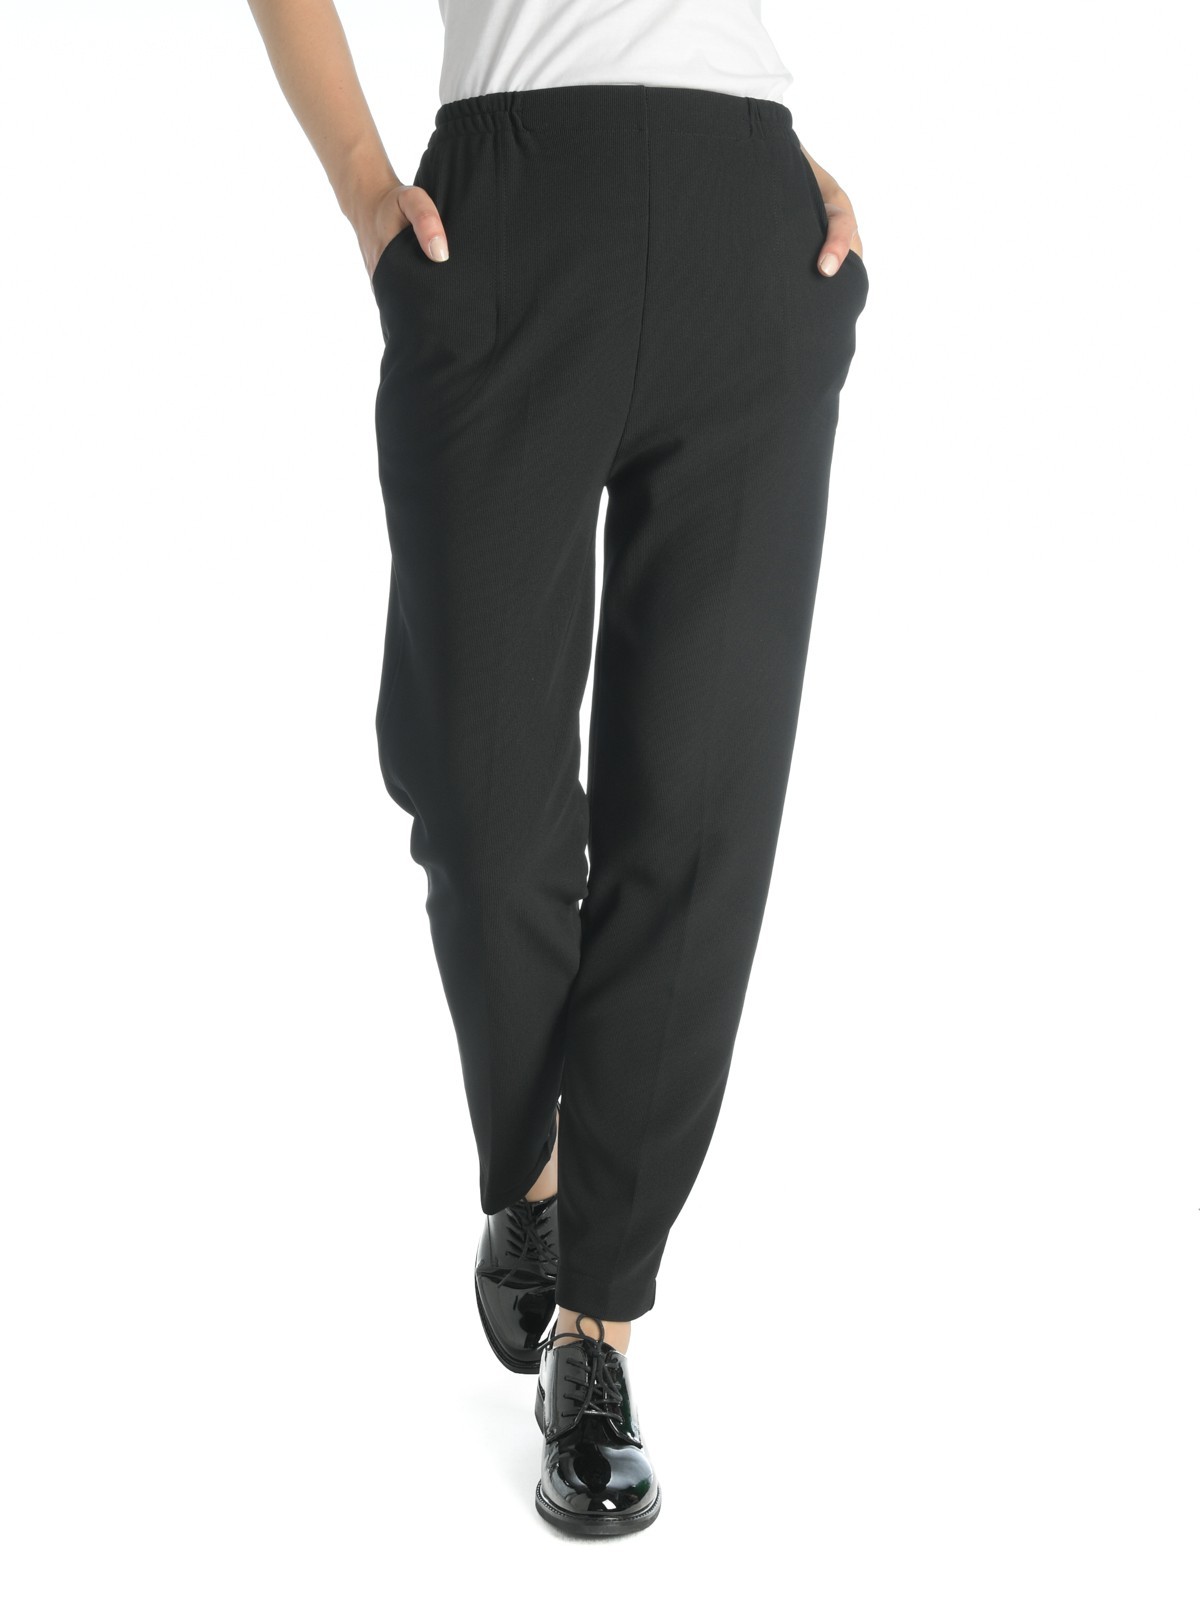 Pantalon confort femme coloris noir - DistriCenter